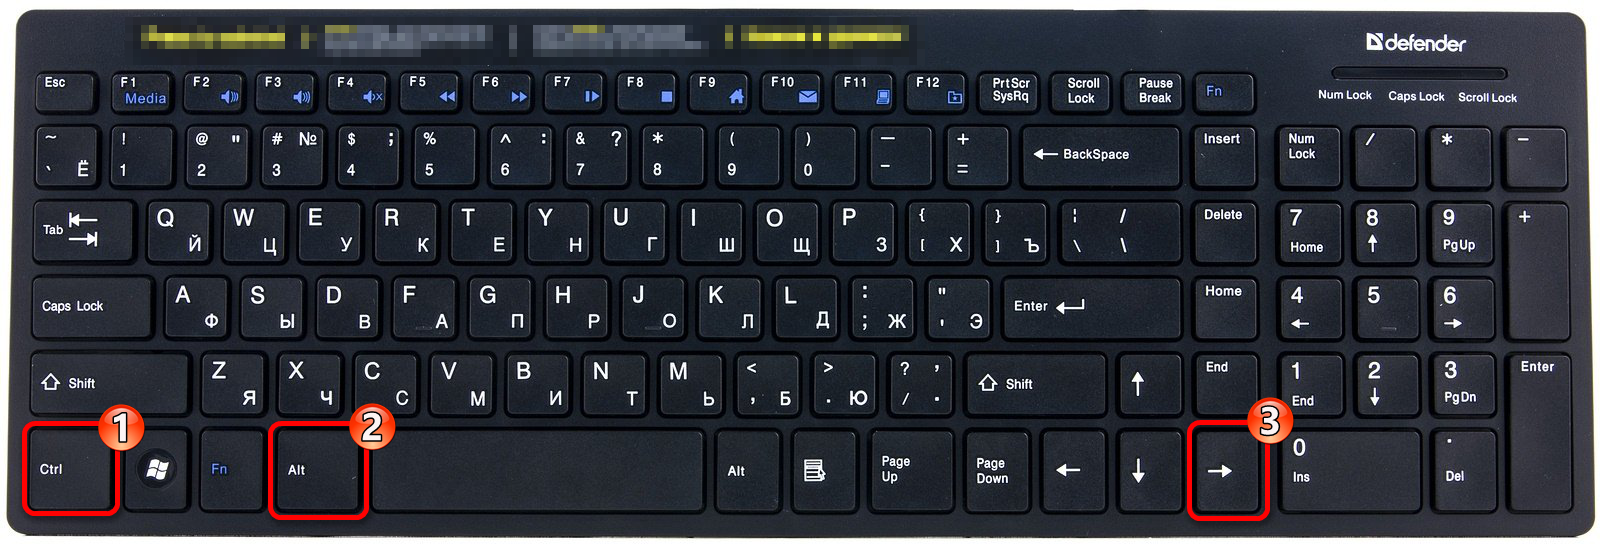 Сочетание клавиш для поворота ориентации экрана вправо в Виндовс 10